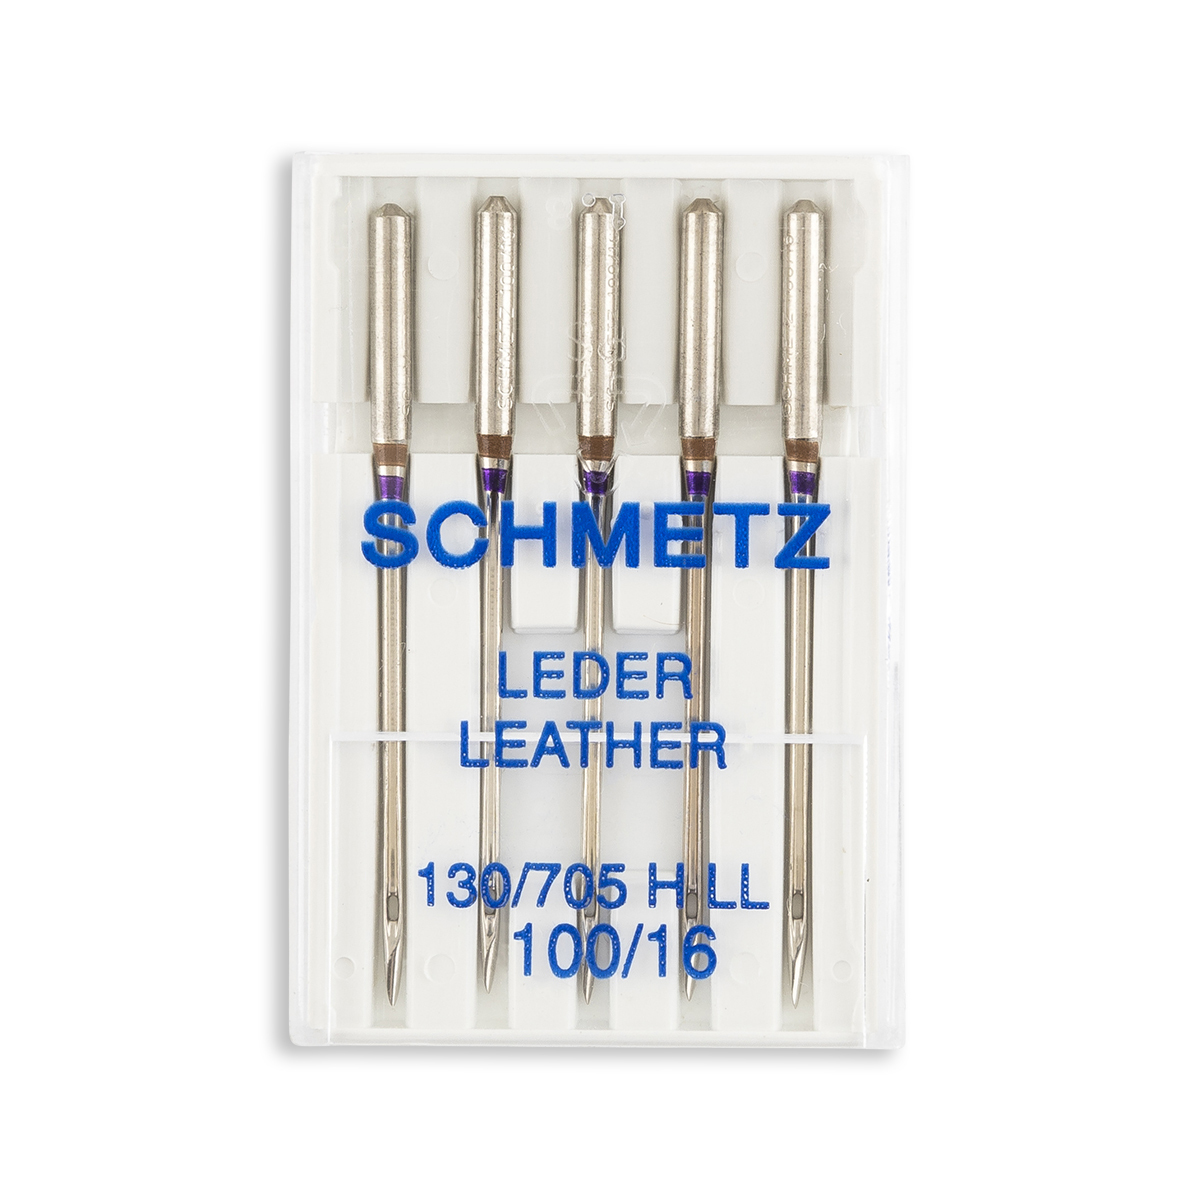 Schmetz 5pk Size 110/18 Leather Sewing Machine Needles 1786 130/705H-L –  World Weidner